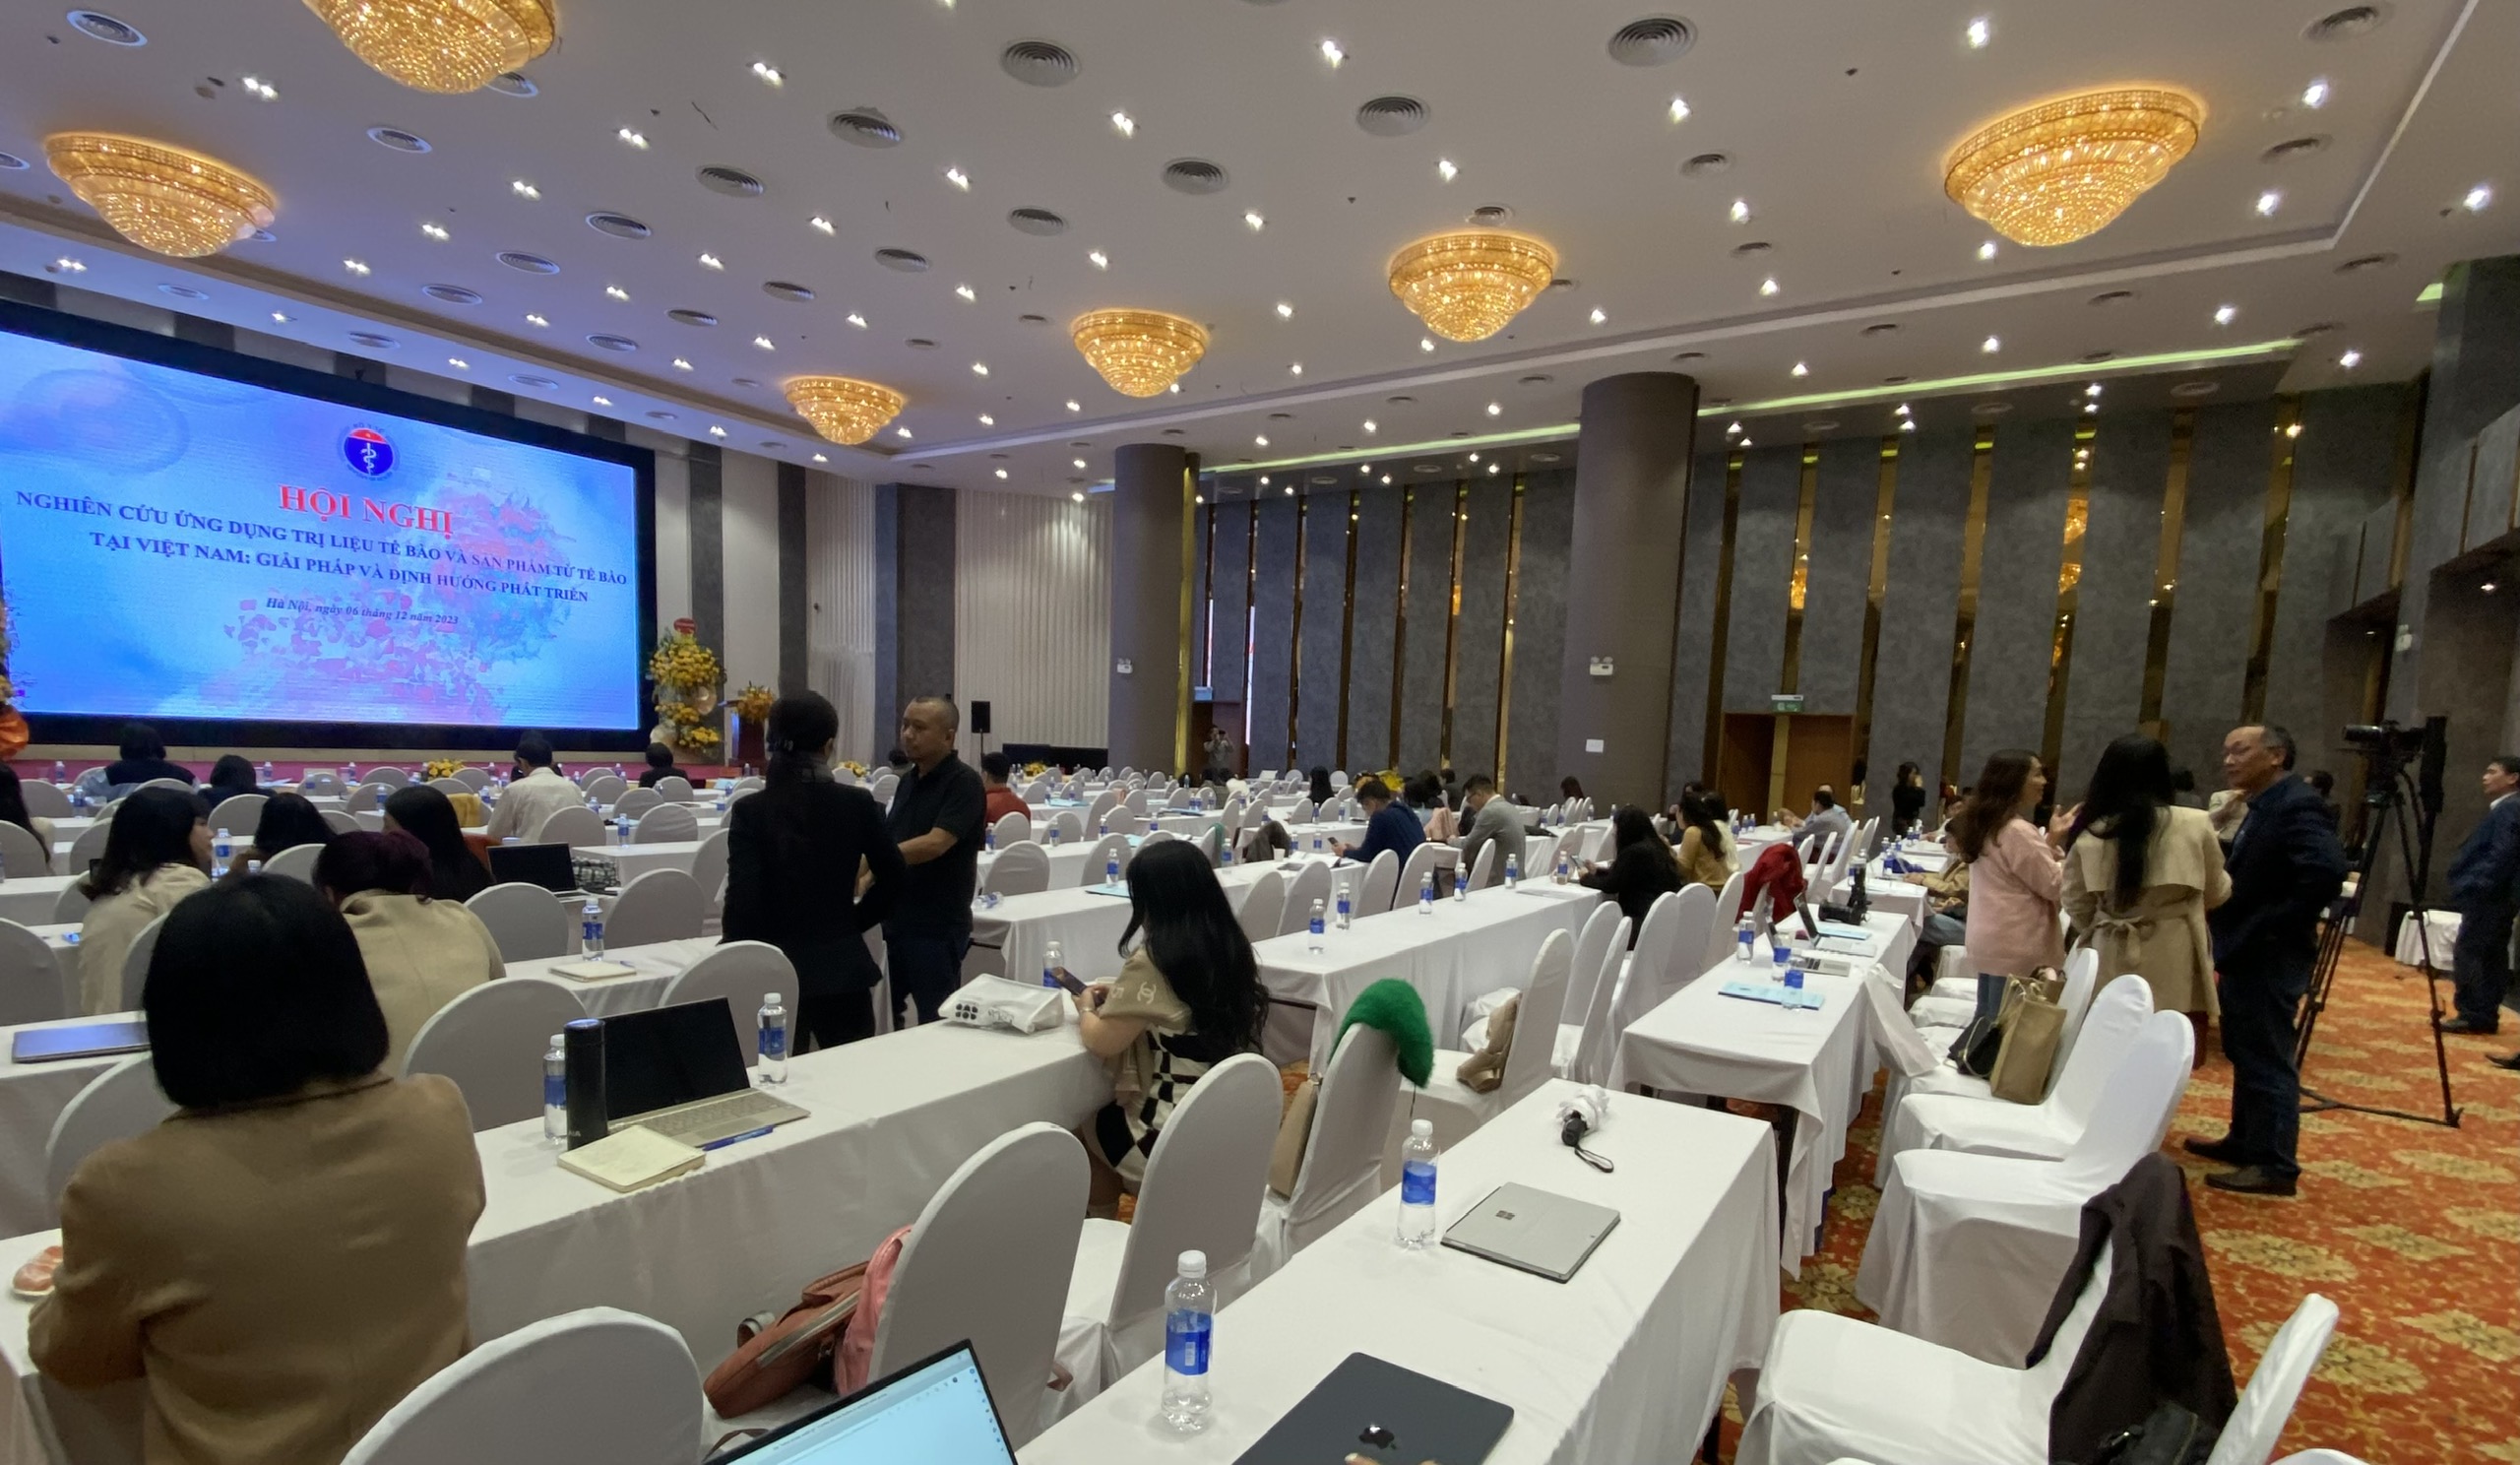 Hội nghị Nghiên cứu ứng dụng trị liệu tế bào và sản phẩm từ tế bào tại Việt Nam